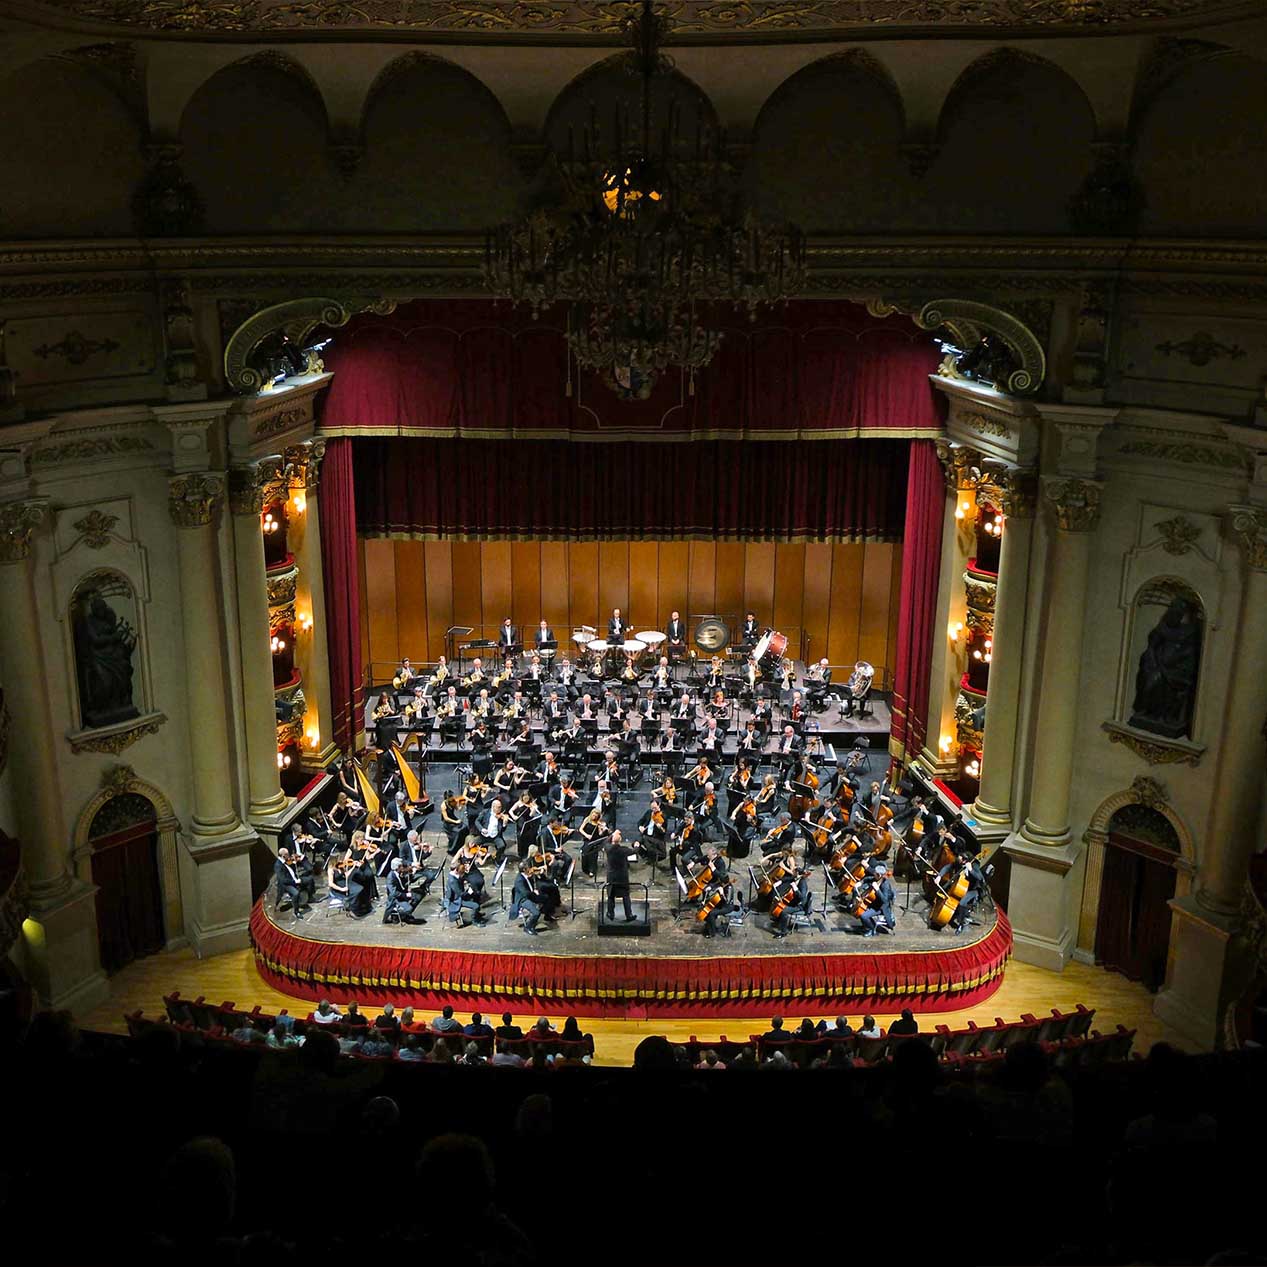 In cinque mesi d’opera e concerti al Filarmonico superata quota 18 mila spettatori